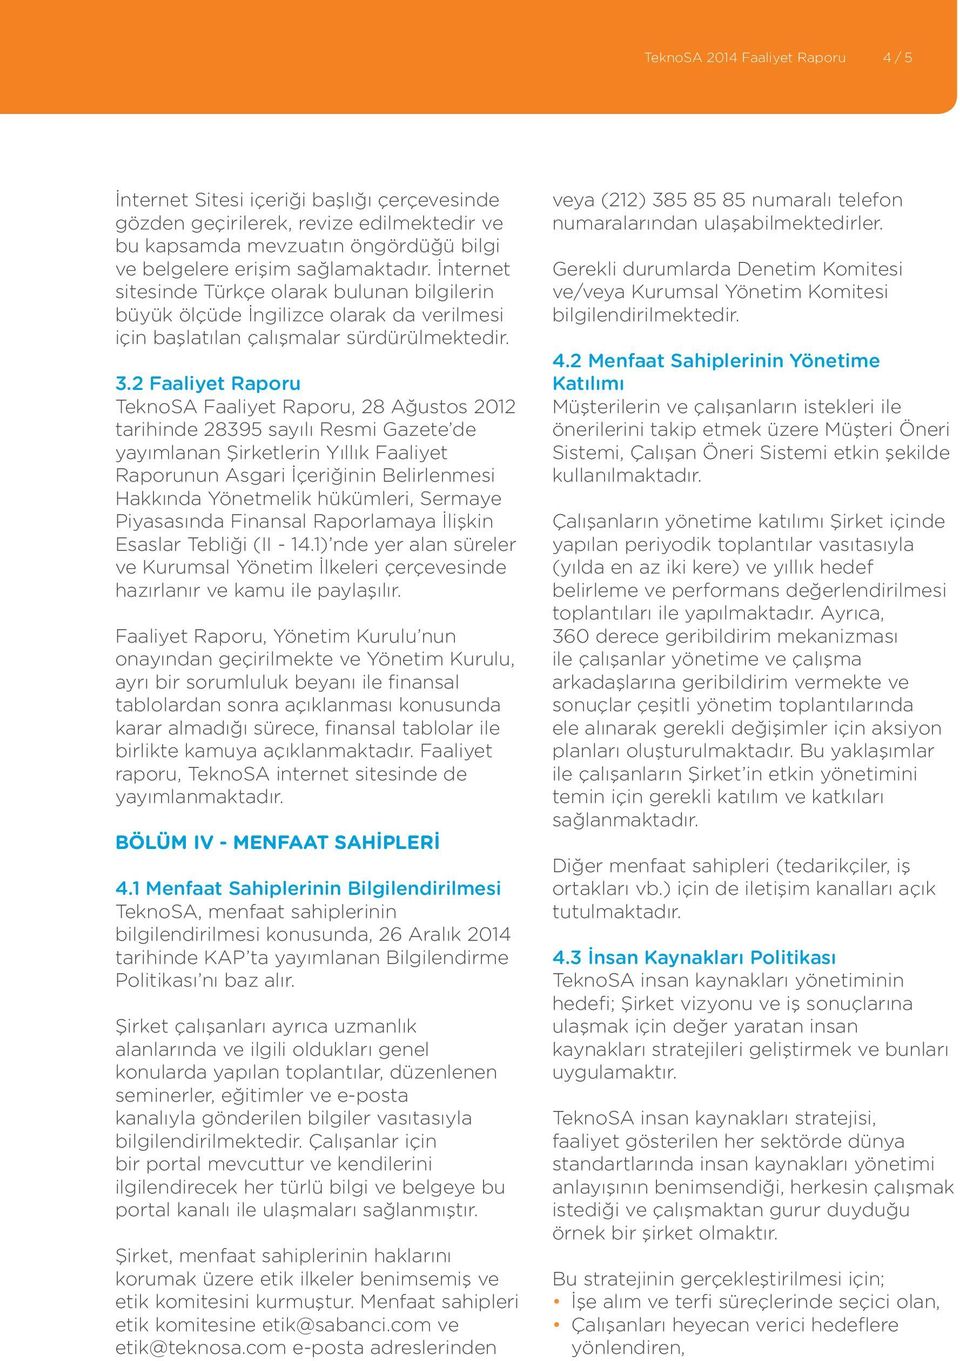 2 Faaliyet Raporu TeknoSA Faaliyet Raporu, 28 Ağustos 2012 tarihinde 28395 sayılı Resmi Gazete de yayımlanan Şirketlerin Yıllık Faaliyet Raporunun Asgari İçeriğinin Belirlenmesi Hakkında Yönetmelik